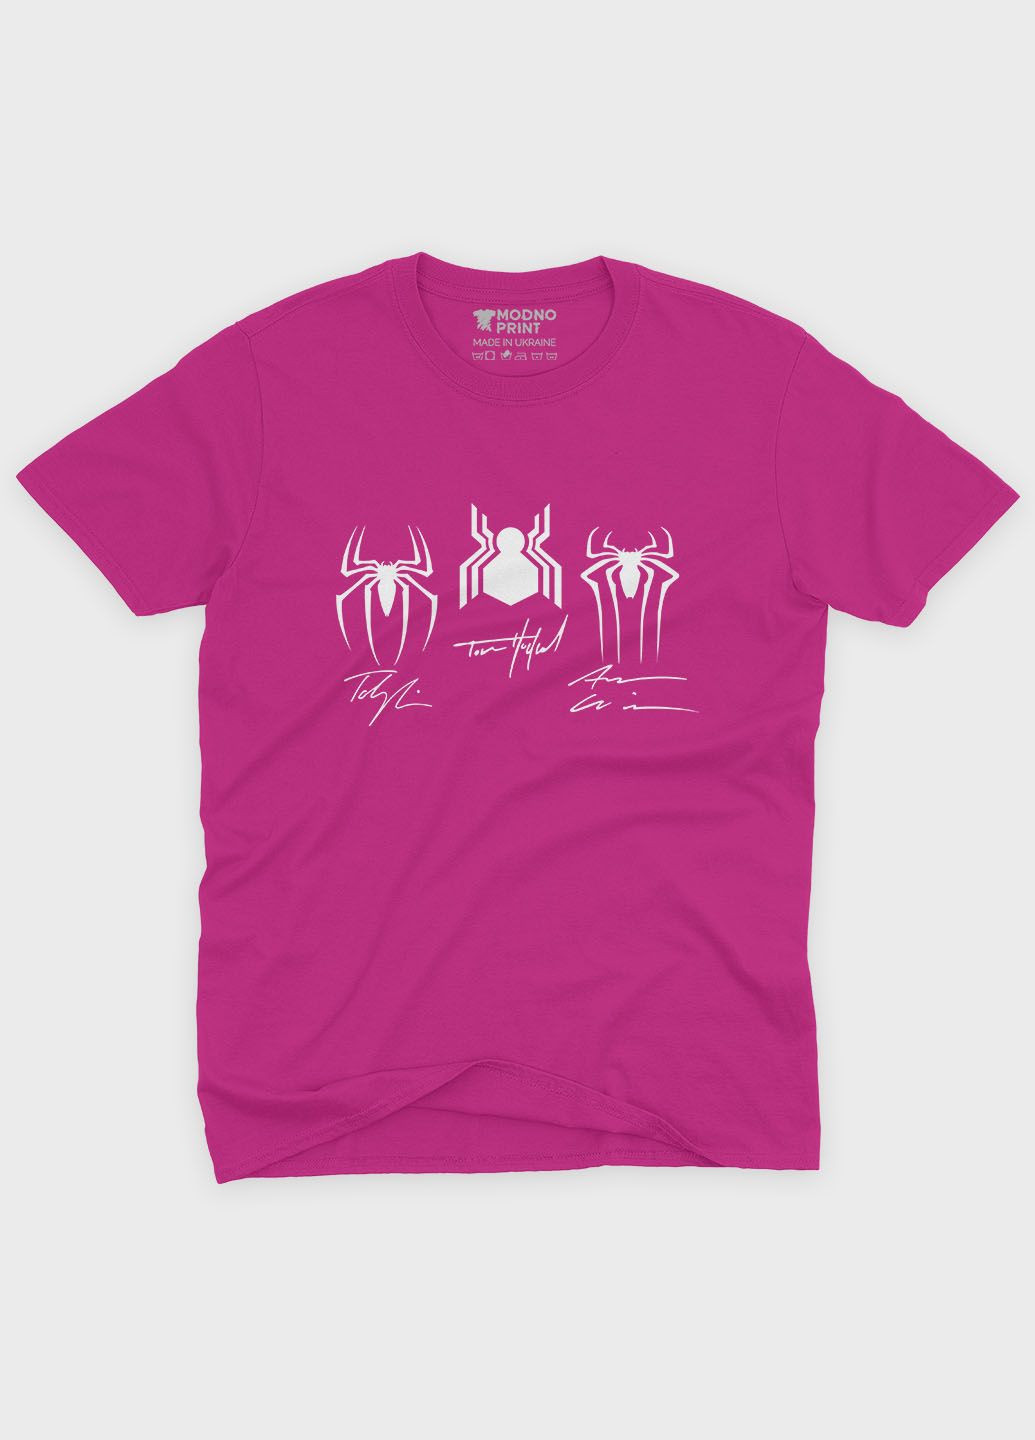 Розовая демисезонная футболка для мальчика с принтом супергероя - человек-паук (ts001-1-fuxj-006-014-098-b) Modno